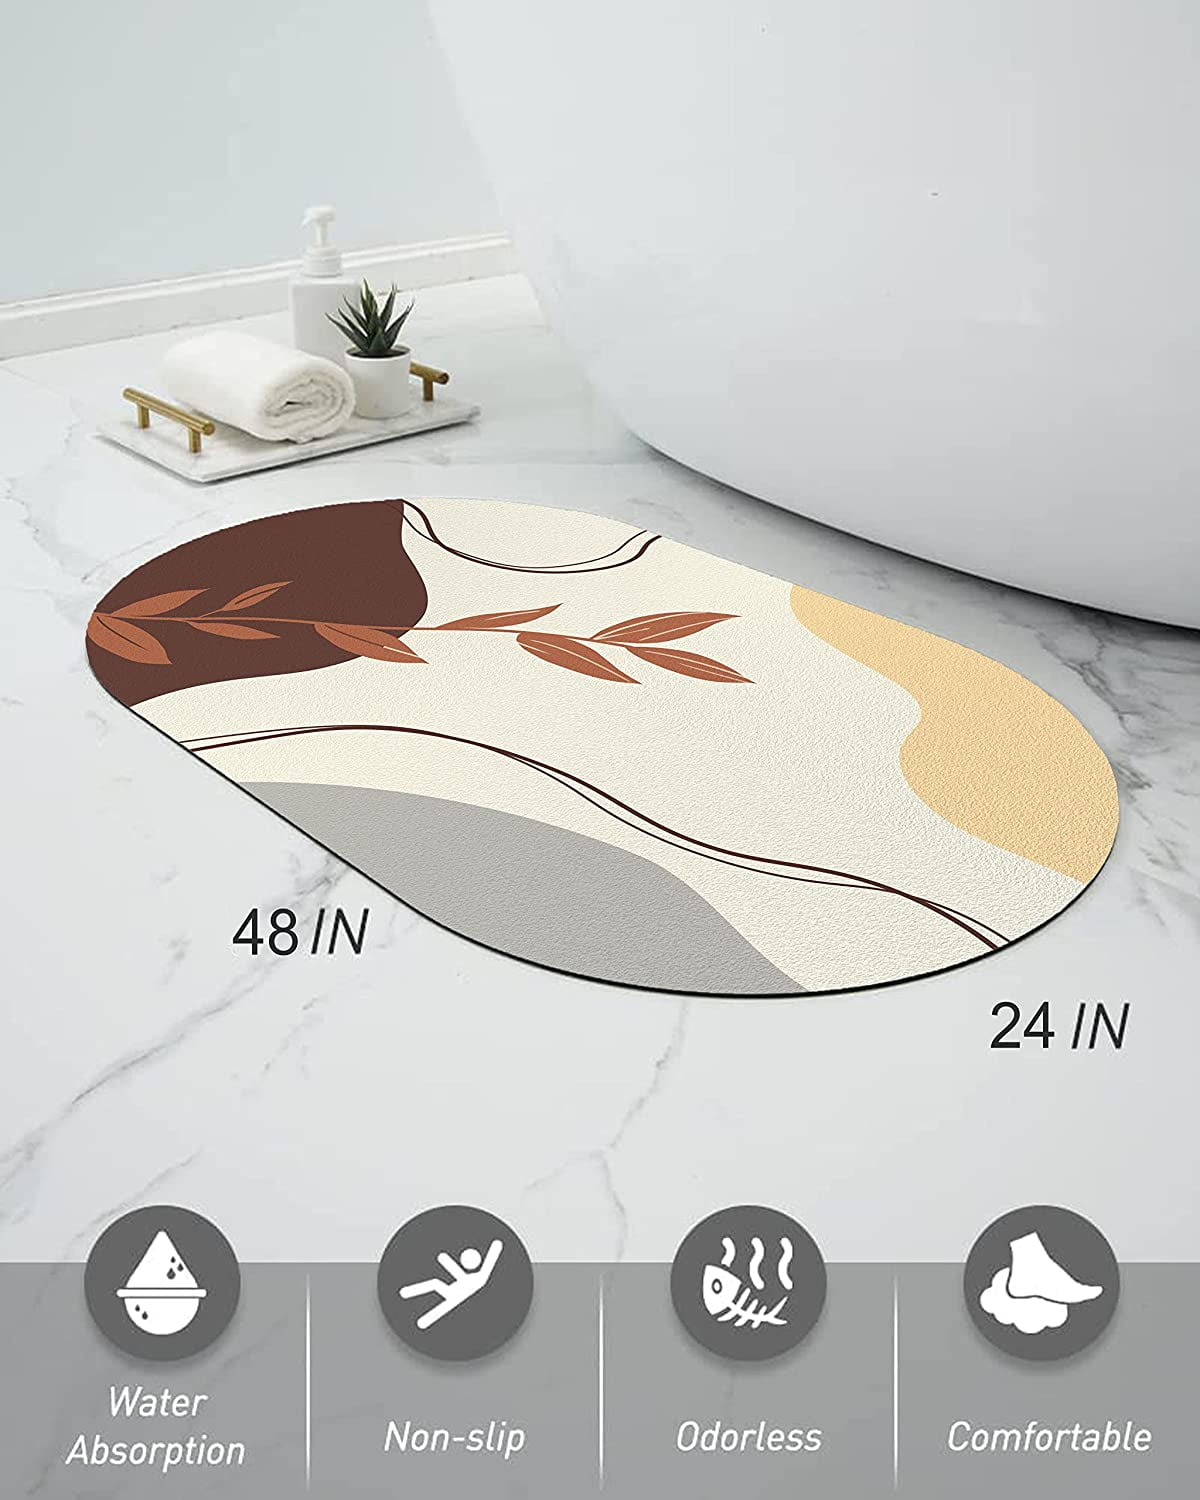 Elle Decor Oval Bubble Bath Mat in Agate Print & Reviews